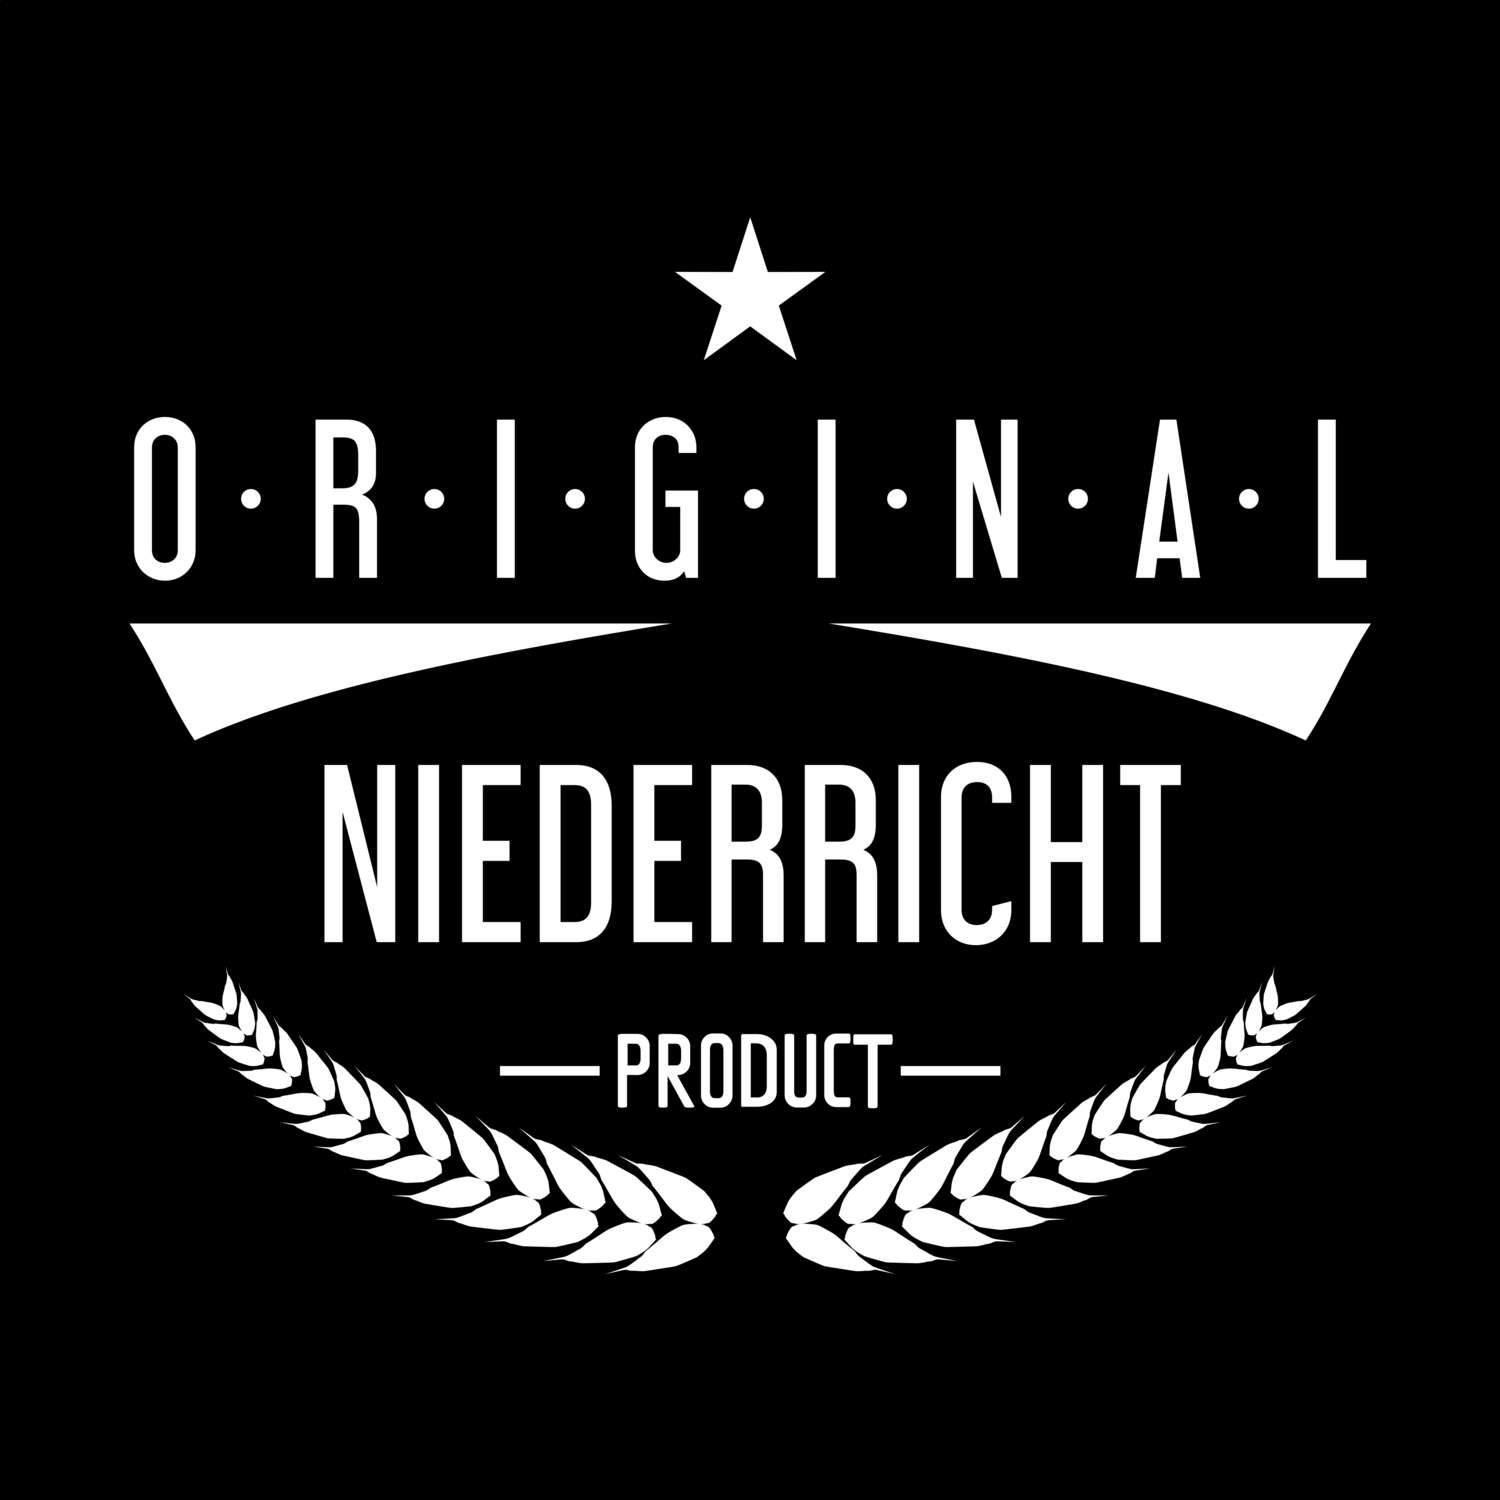 Niederricht T-Shirt »Original Product«